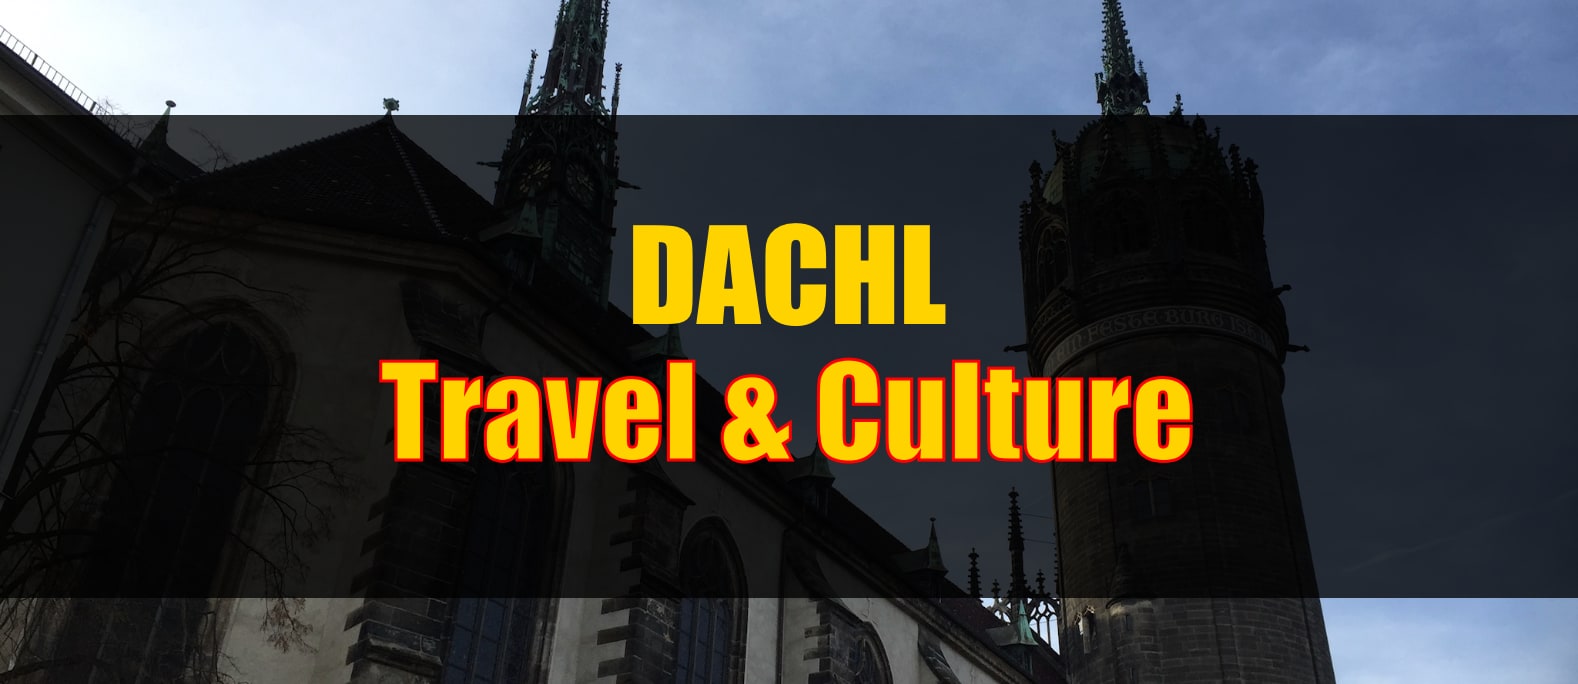 DACHL Travel & Culture